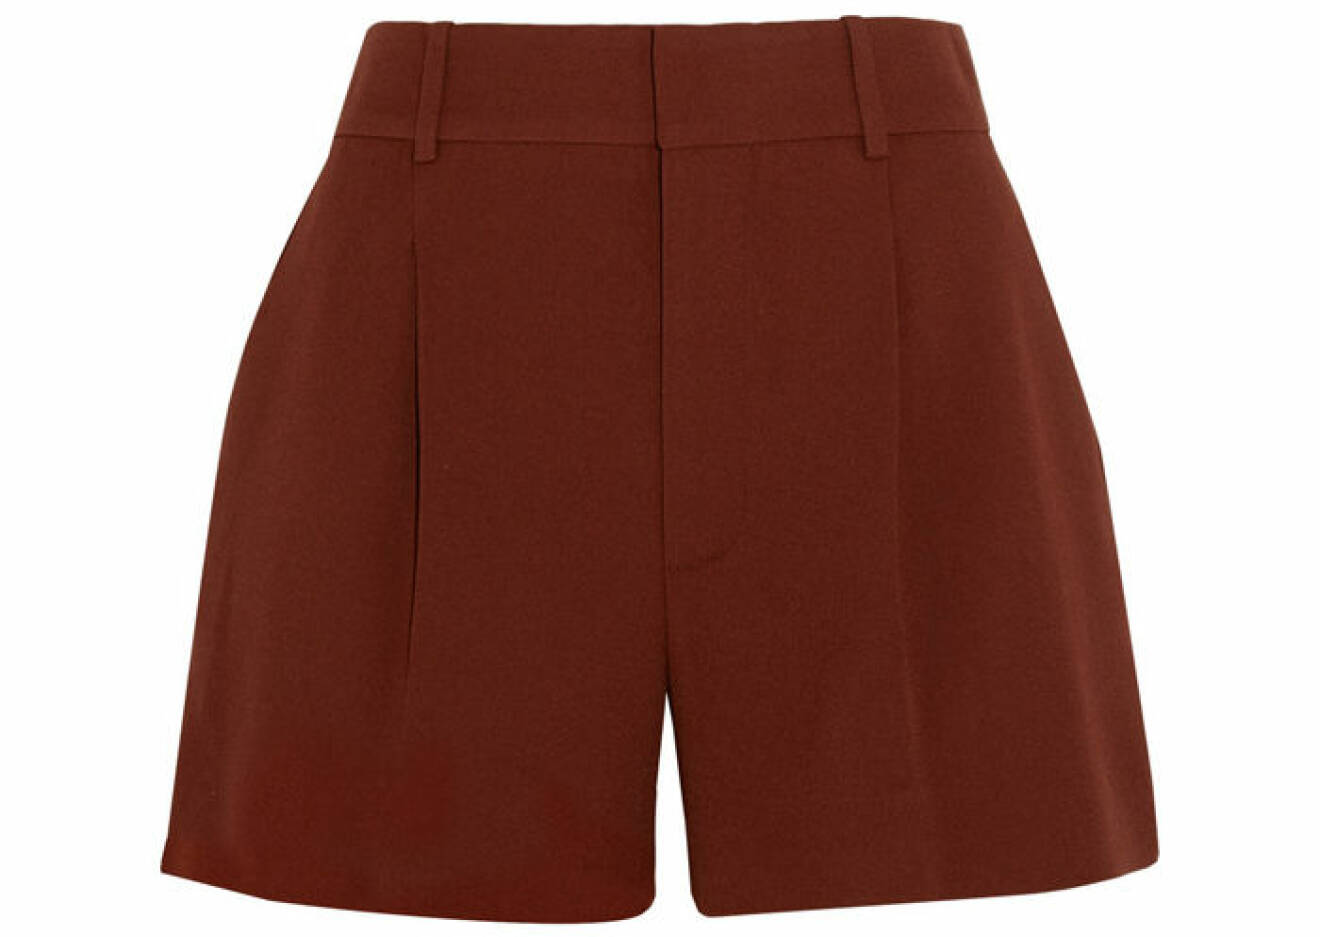 6. Shorts, 4452 kr, Chloé Net-a-porter.com